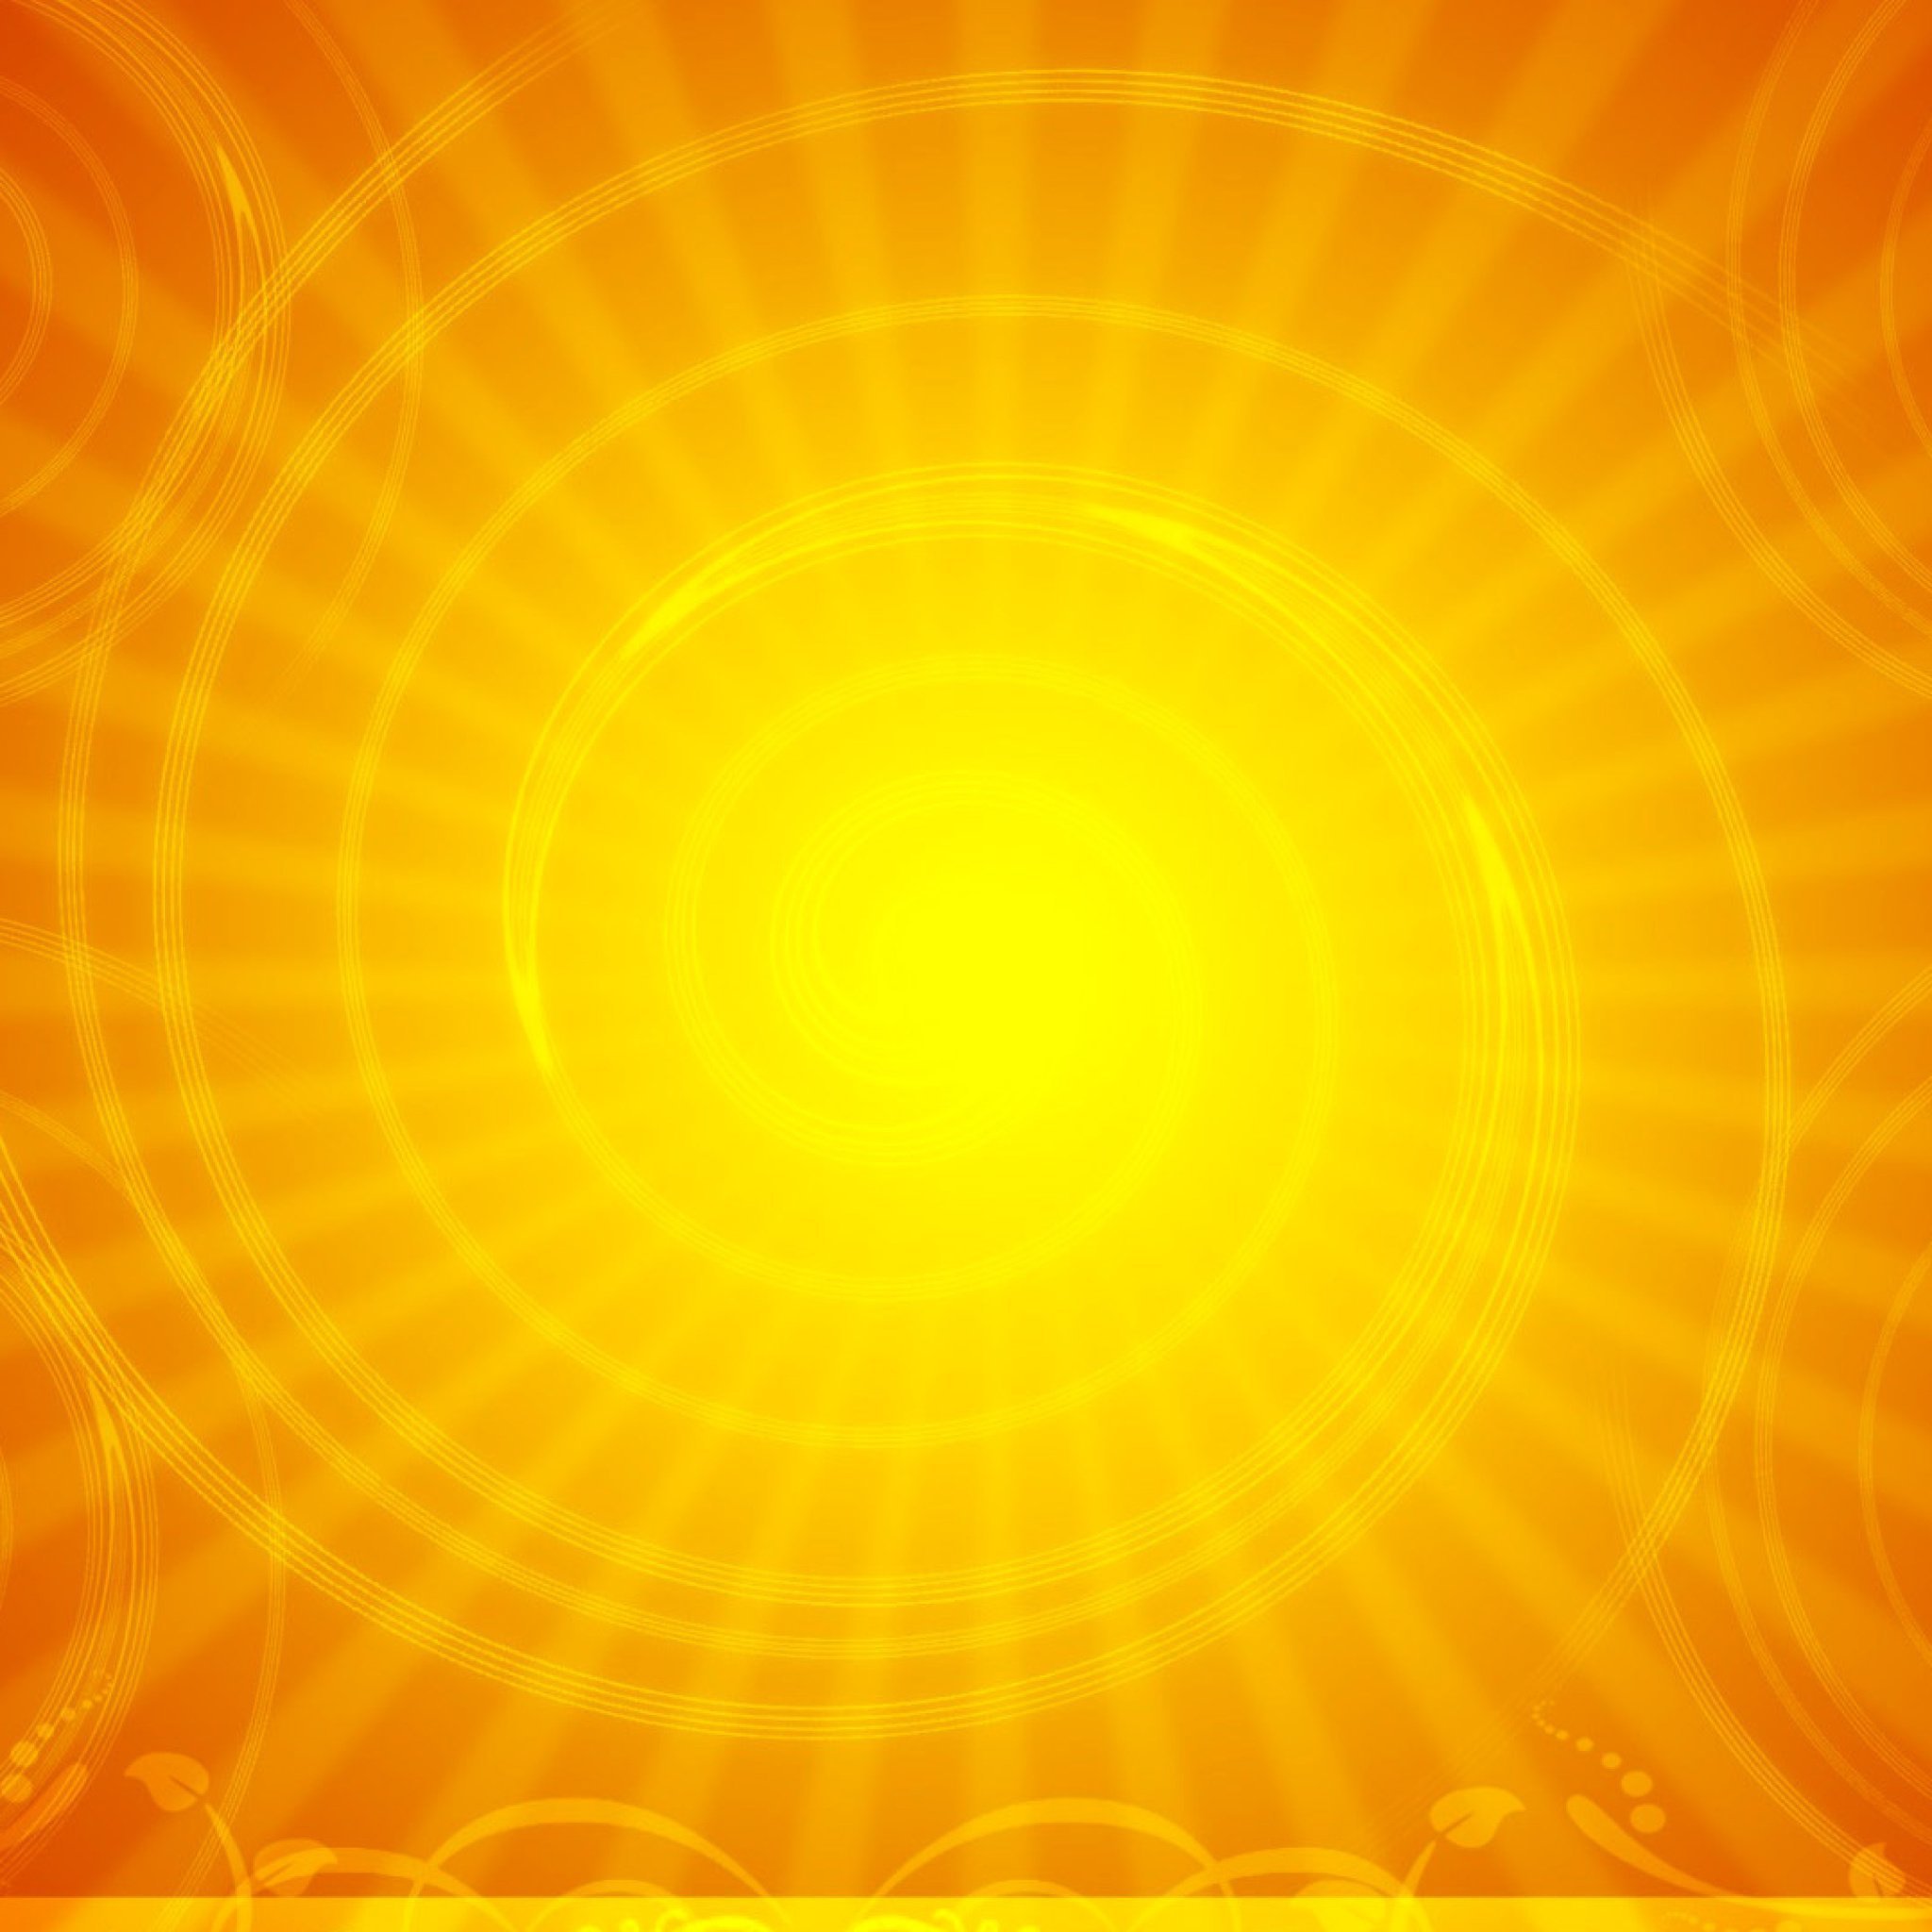 Здесь под желтым солнцем ламп. Солнечный фон. Желтое солнце. Желтый фон. Оранжевый фон.